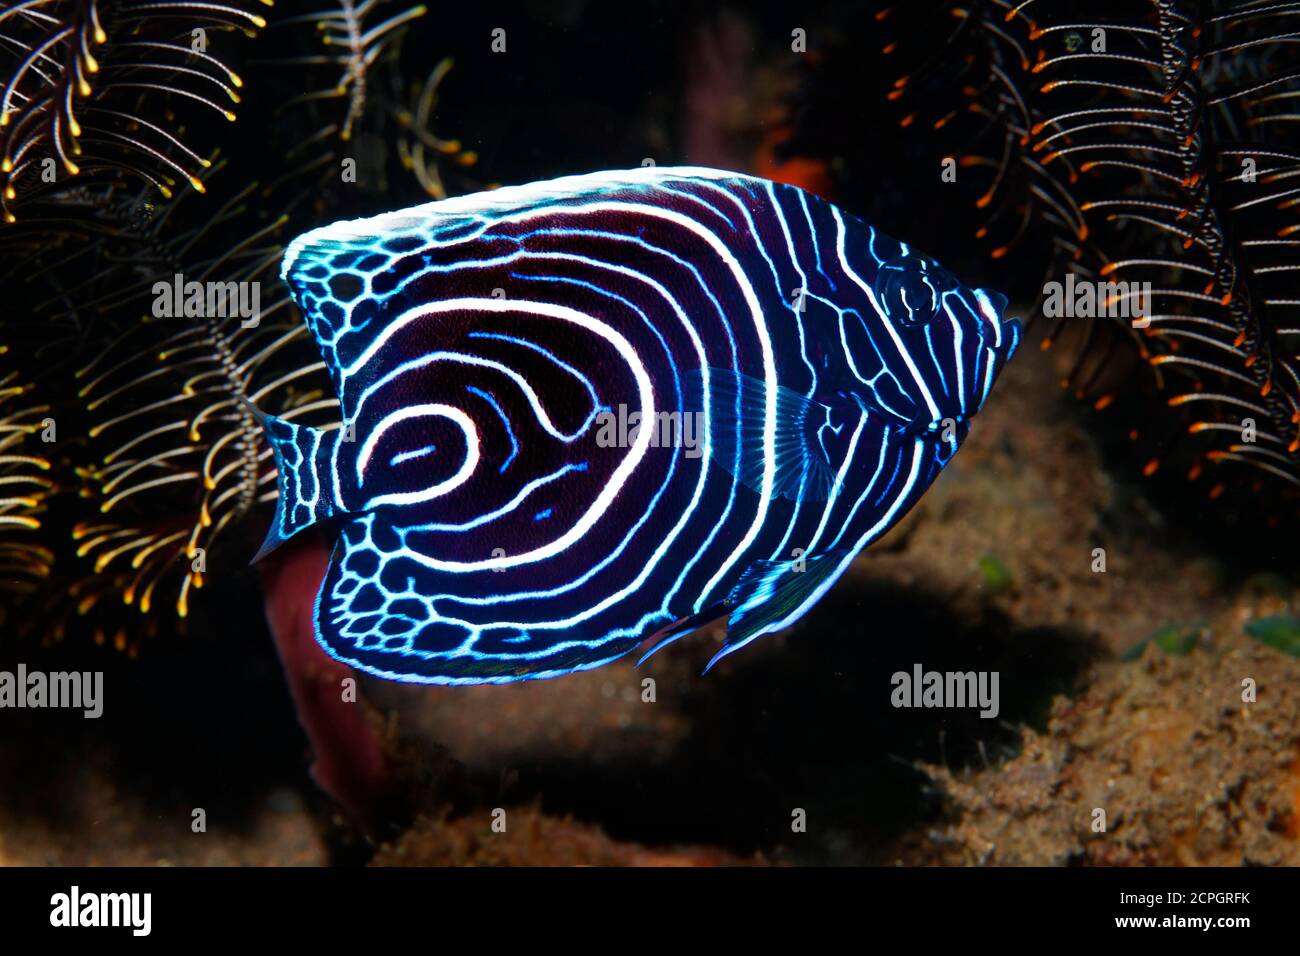 L'empereur angelfish ( Pomacanthus imperator) , forme de jeunesse, Bali, Indo-Pacifique, Indonésie, Asie Banque D'Images